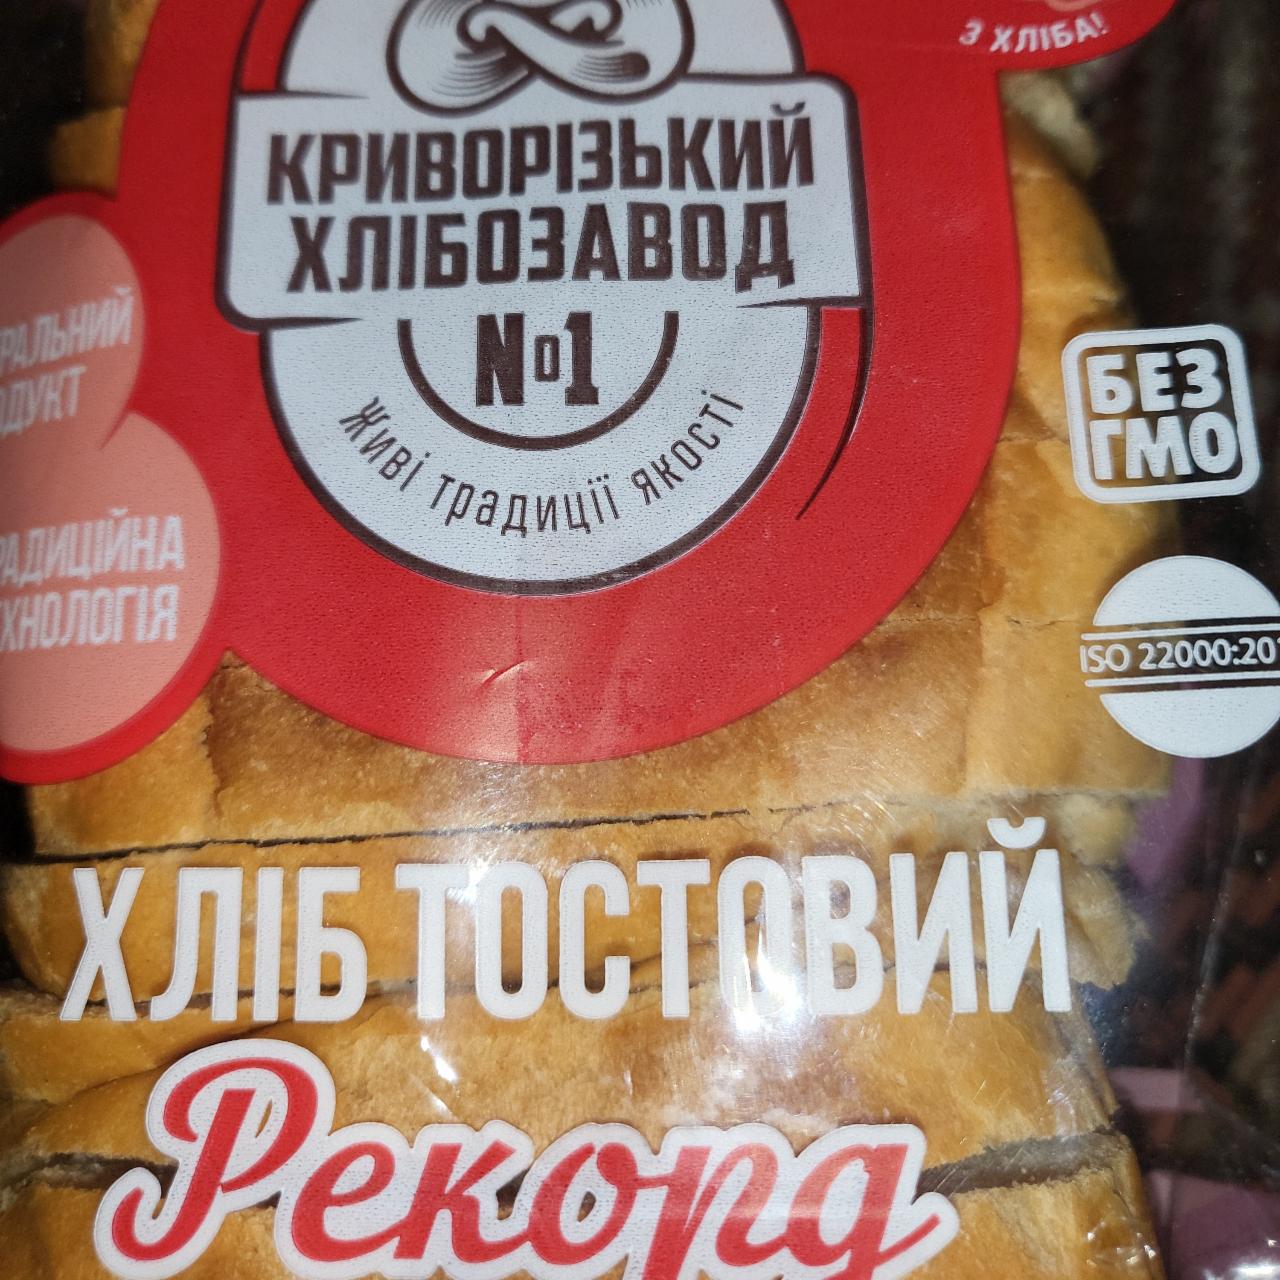 Фото - Хліб тостовий Рекорд Криворізький хлібозавод №1